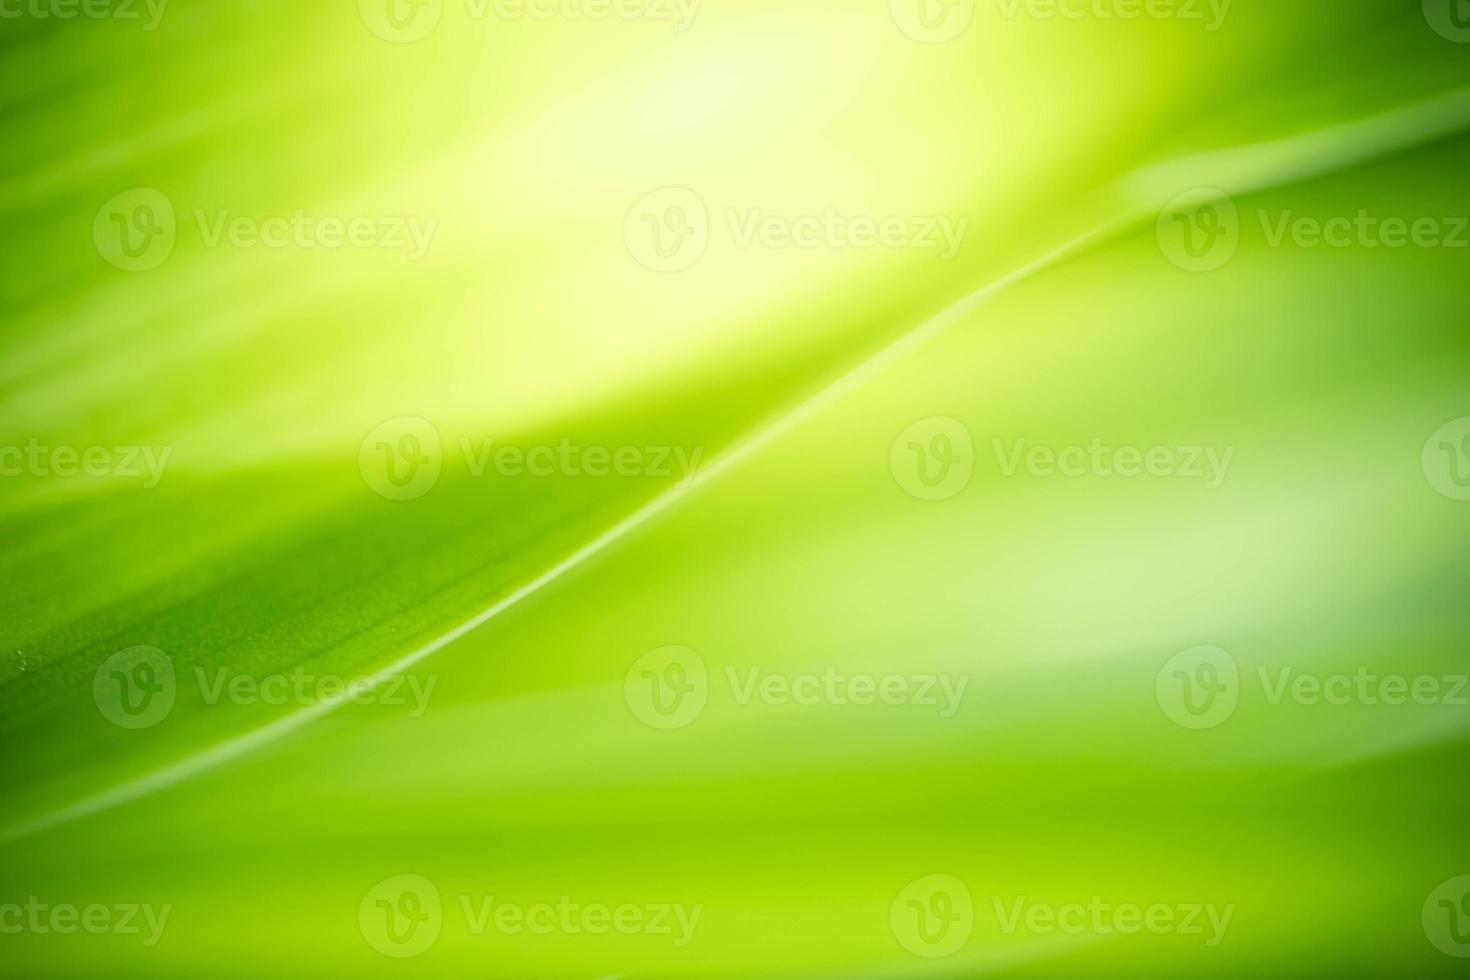 abstrakter Hintergrund Natur des grünen Blattes auf unscharfem grünem Hintergrund im Garten. natürliche grüne Blätter Pflanzen, die als Deckblatt für den Frühlingshintergrund verwendet werden, Grün, Umwelt, Ökologie, lindgrüne Tapete foto